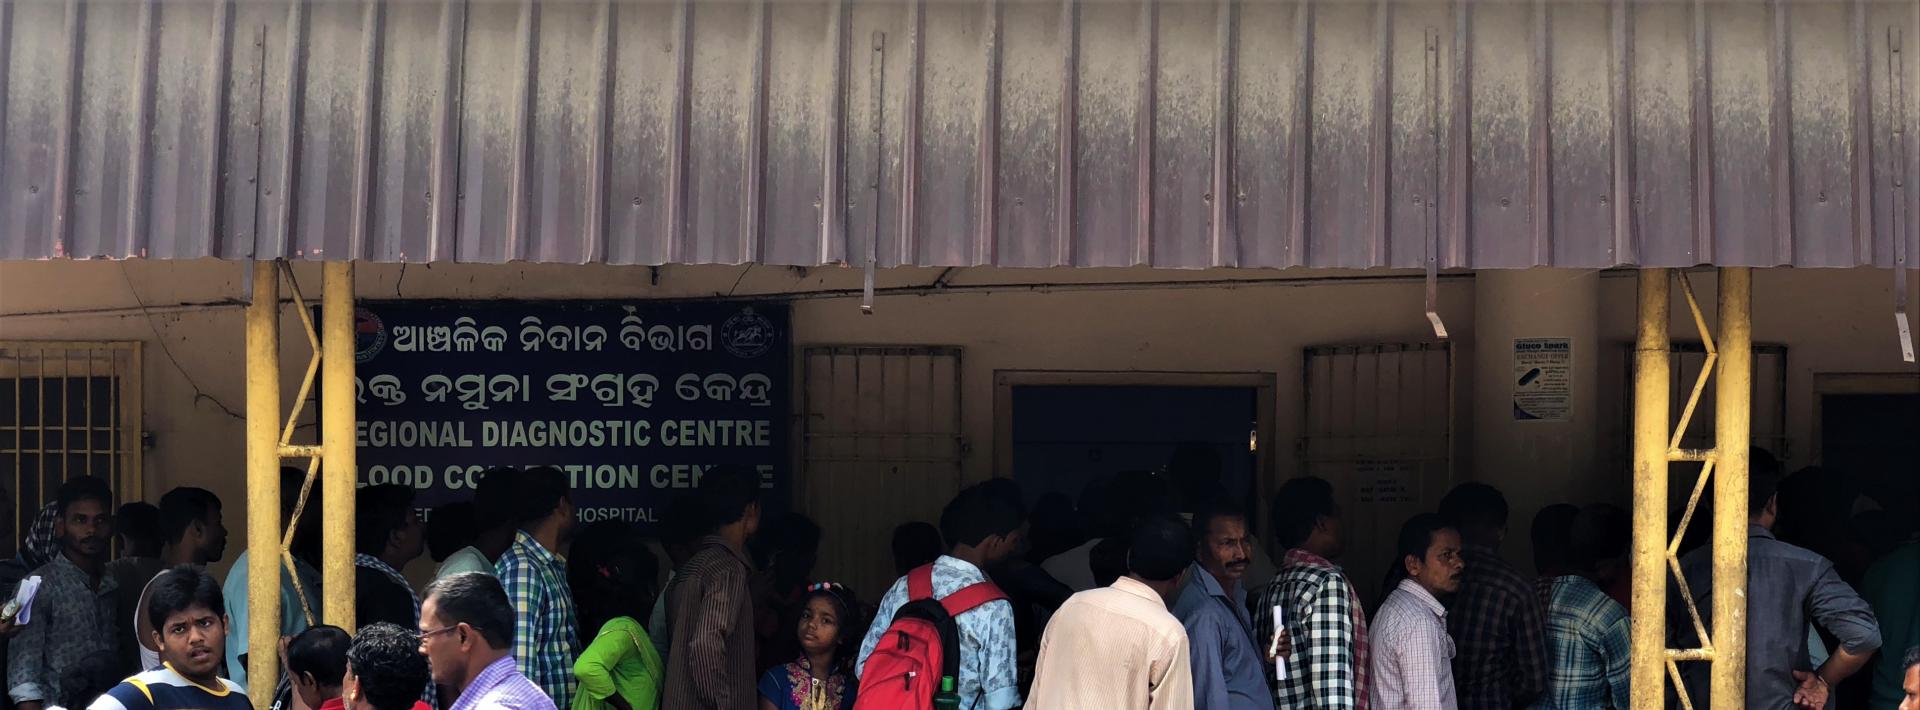 Diagnostic center in Odisha